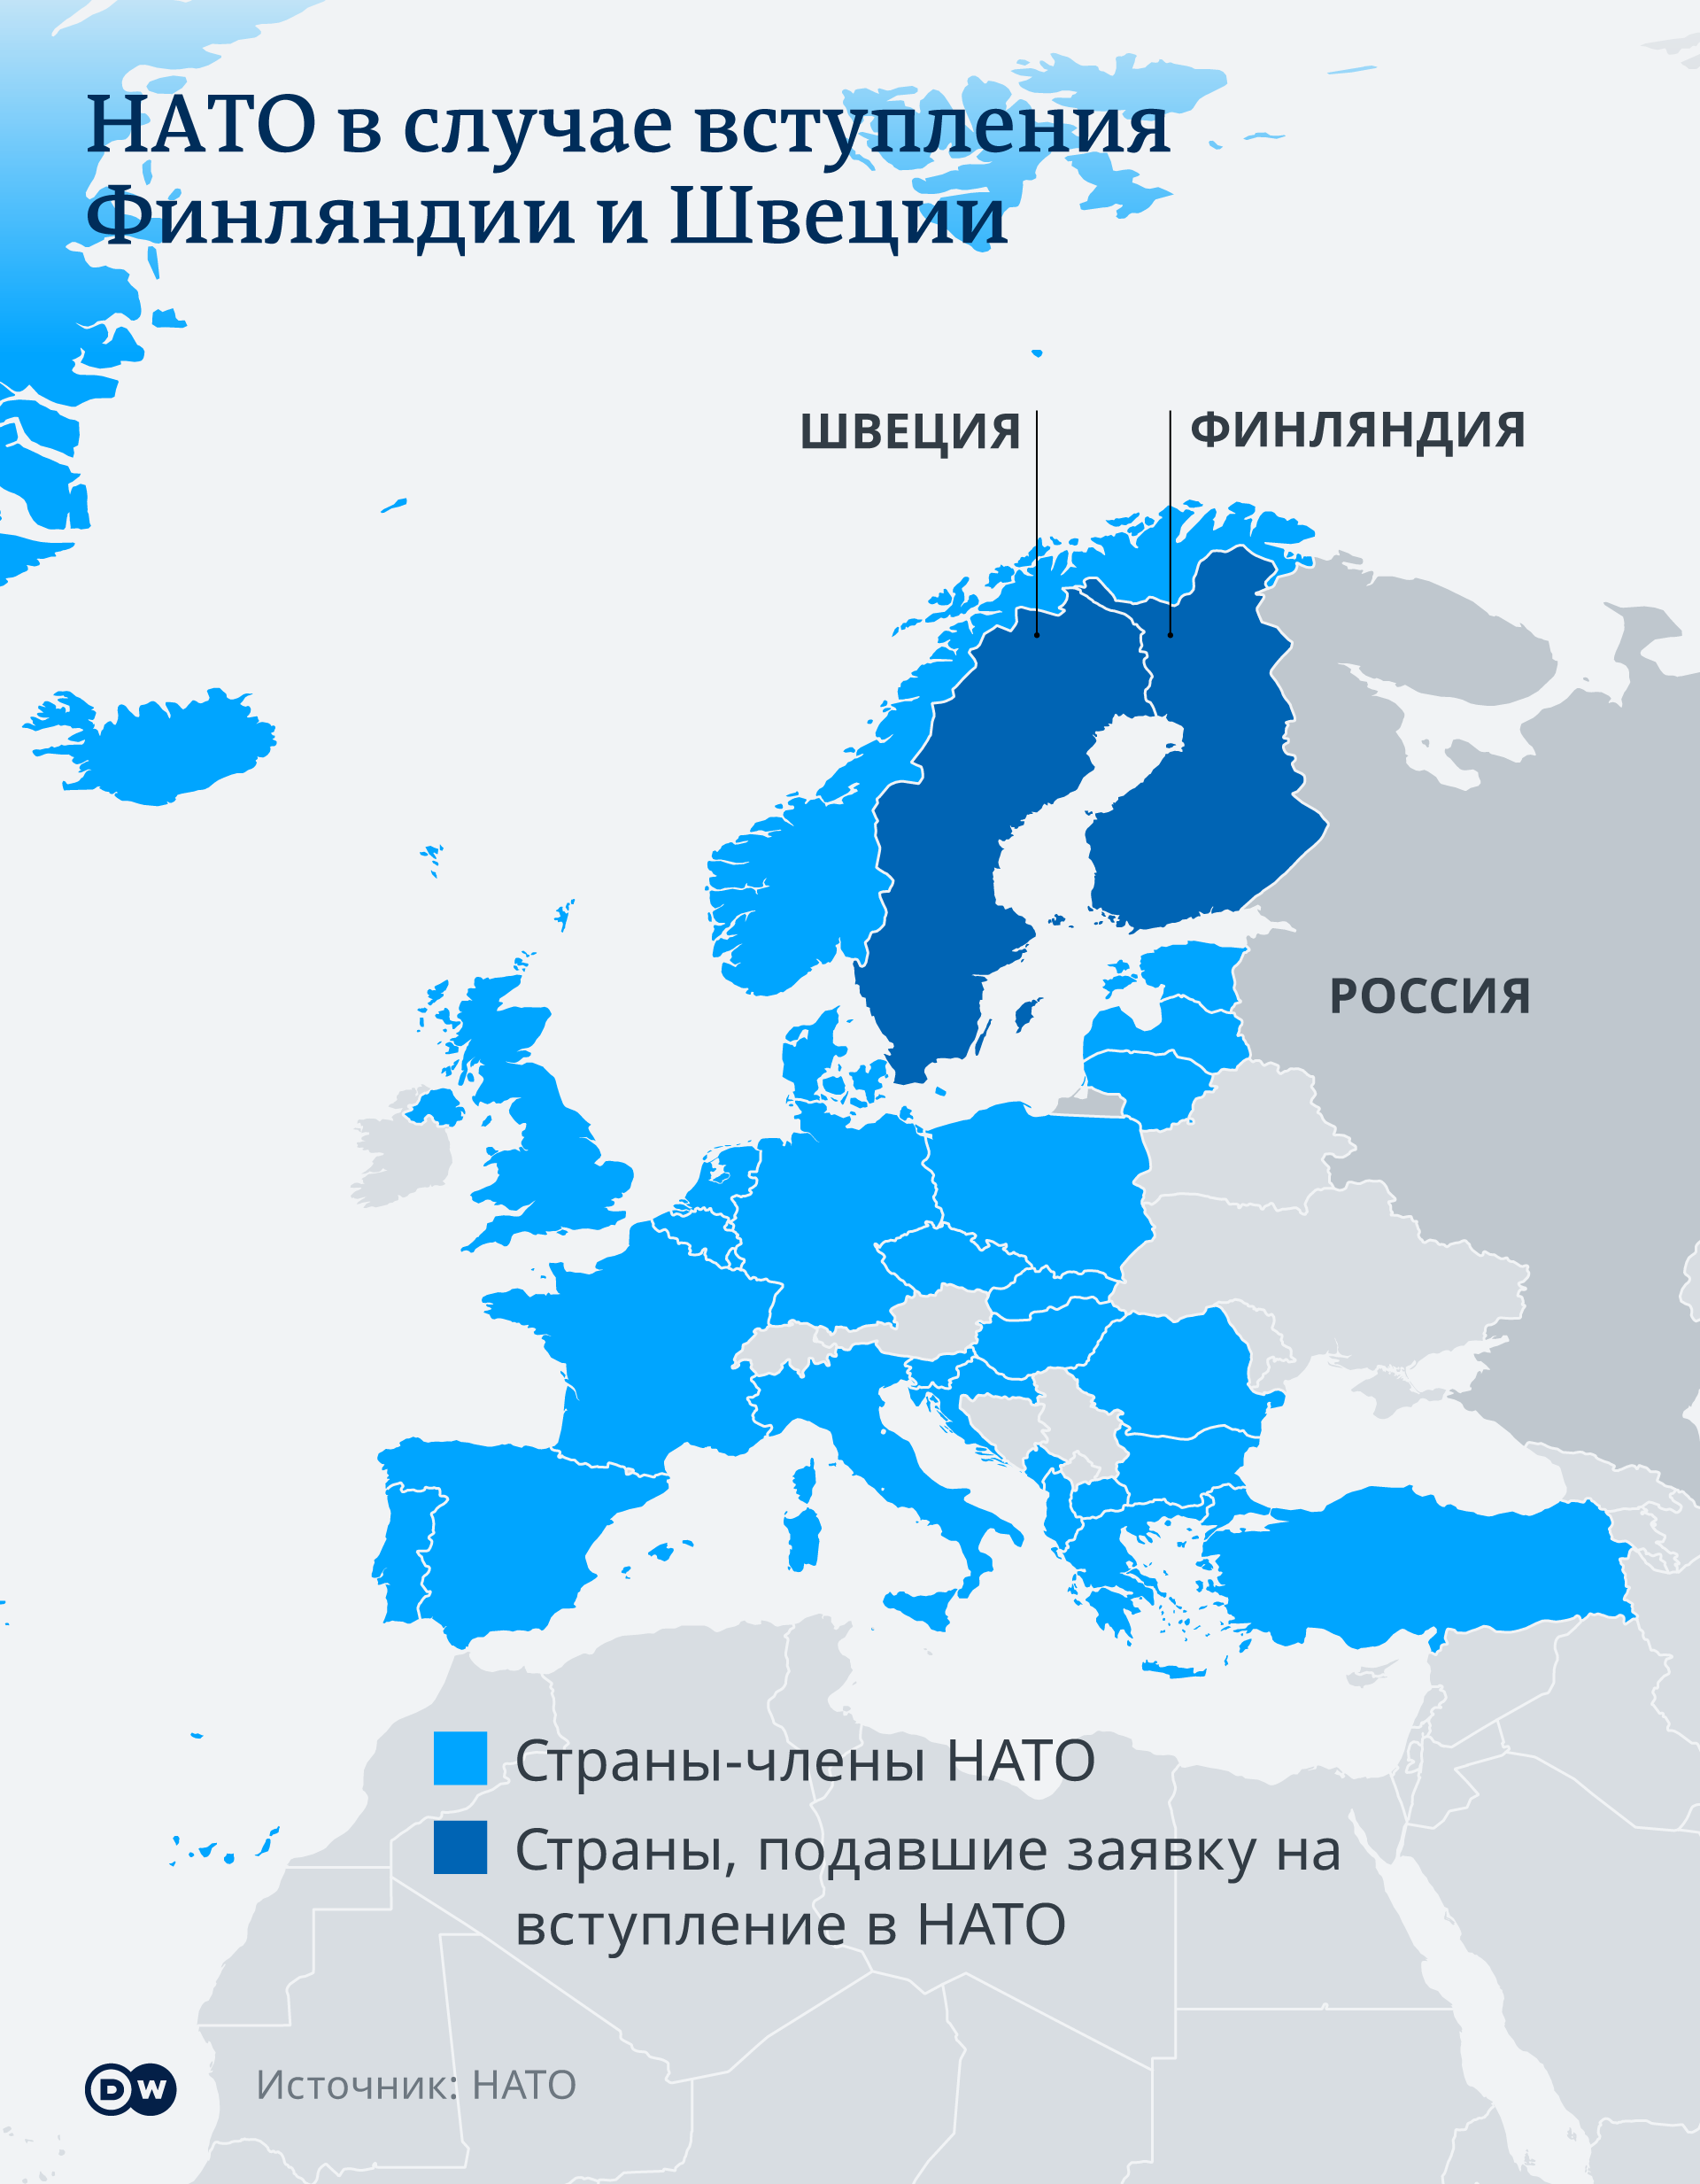 Инфографика НАТО в случае вступления Финляндии и Швеции 